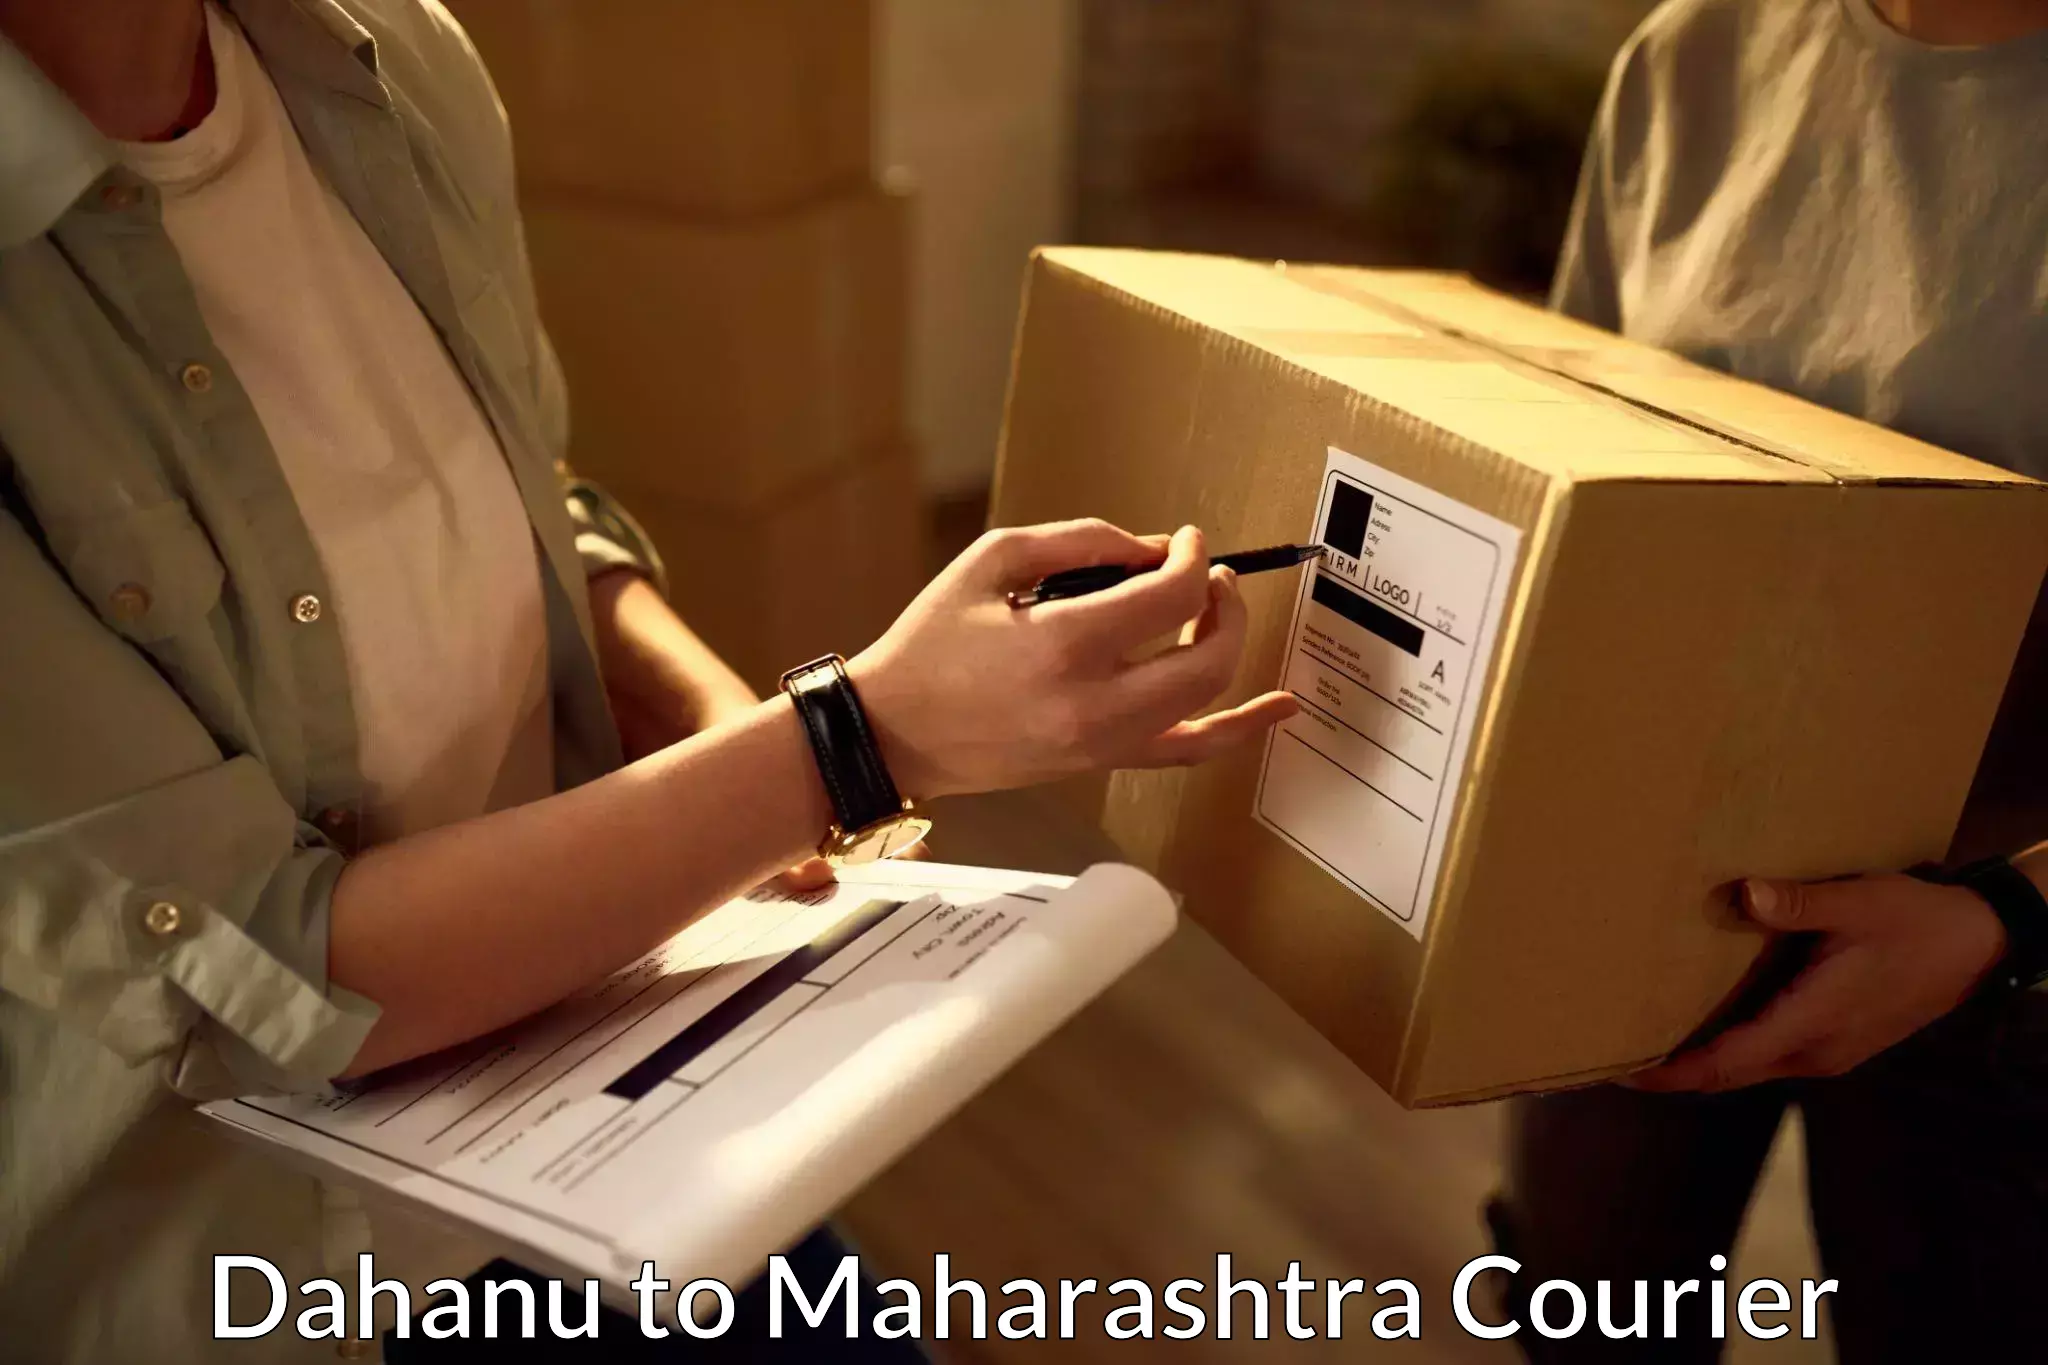 High-speed parcel service Dahanu to Maharashtra